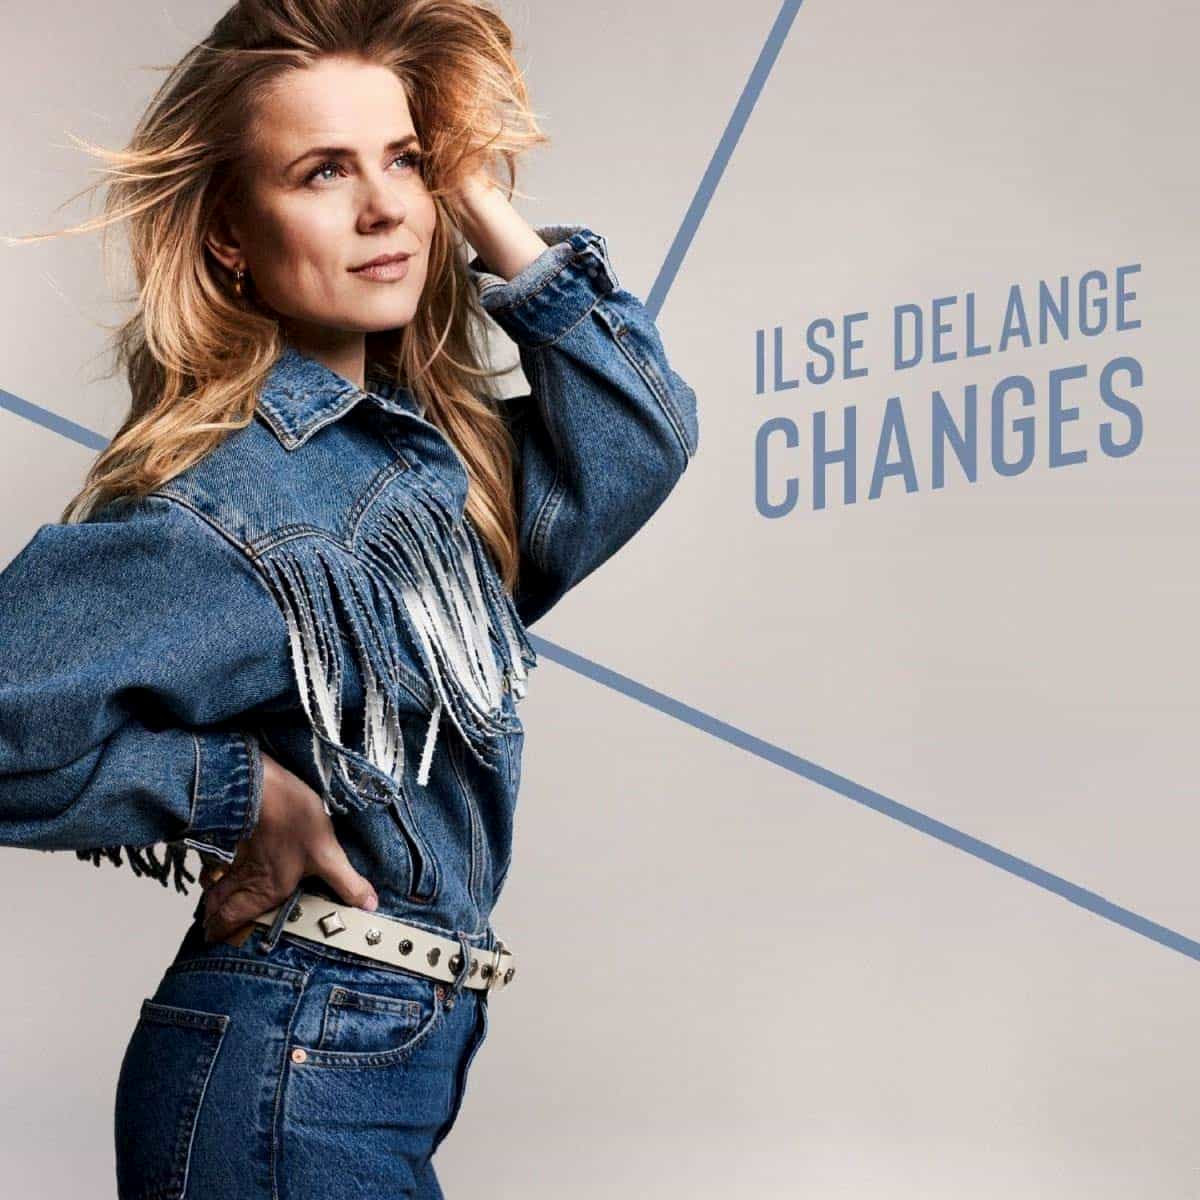 Ilse DeLange veröffentlicht neues Album Changes - moderne Country-Musik mit viel Gefühl